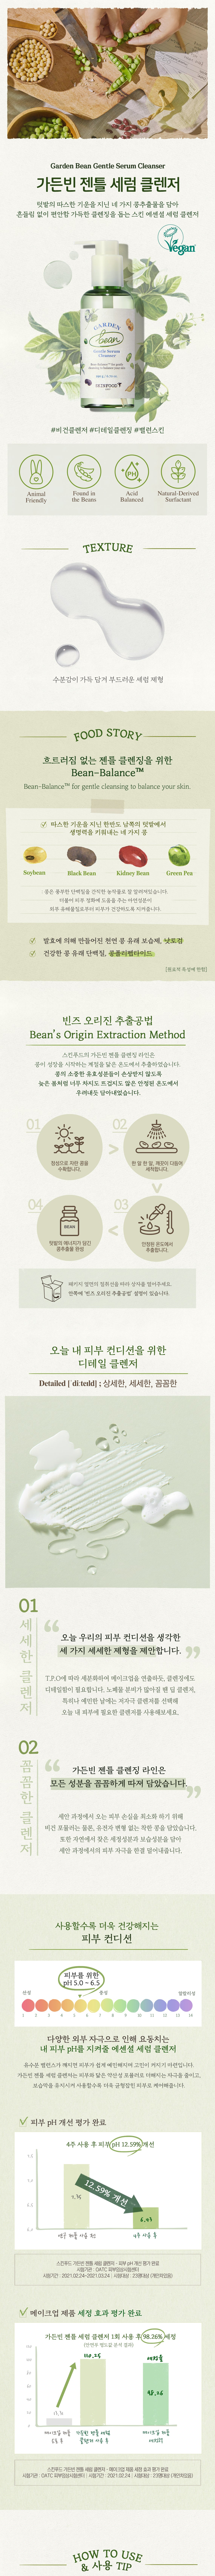 SKINFOOD_Garden Bean Gentle Serum Cleanser 190ml_1